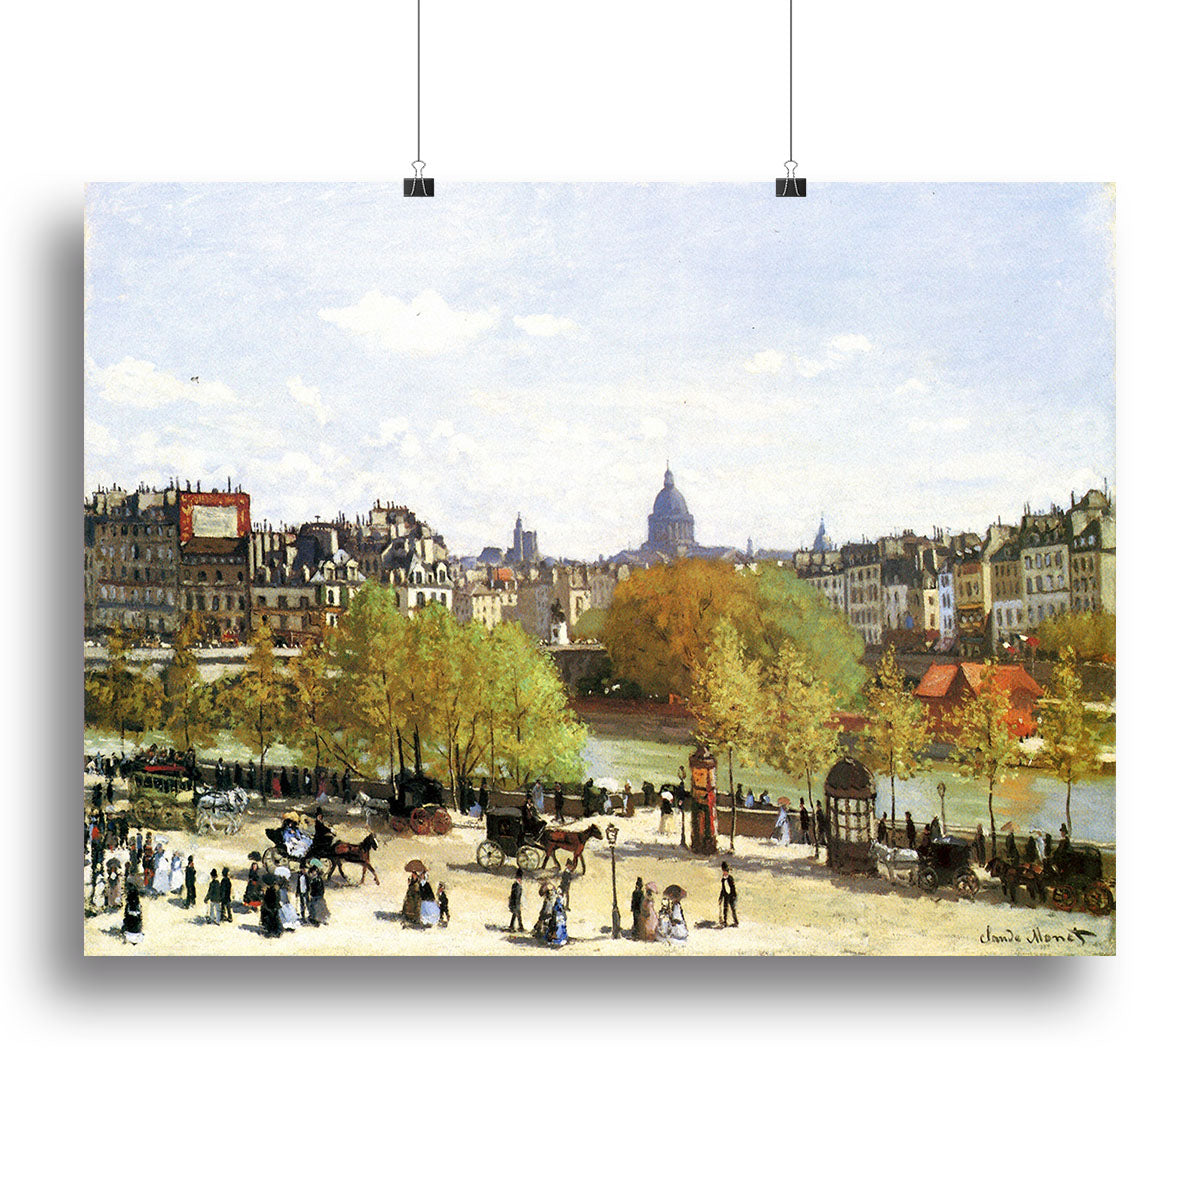 Le quai du Louvre by Monet Canvas Print or Poster - Canvas Art Rocks - 2